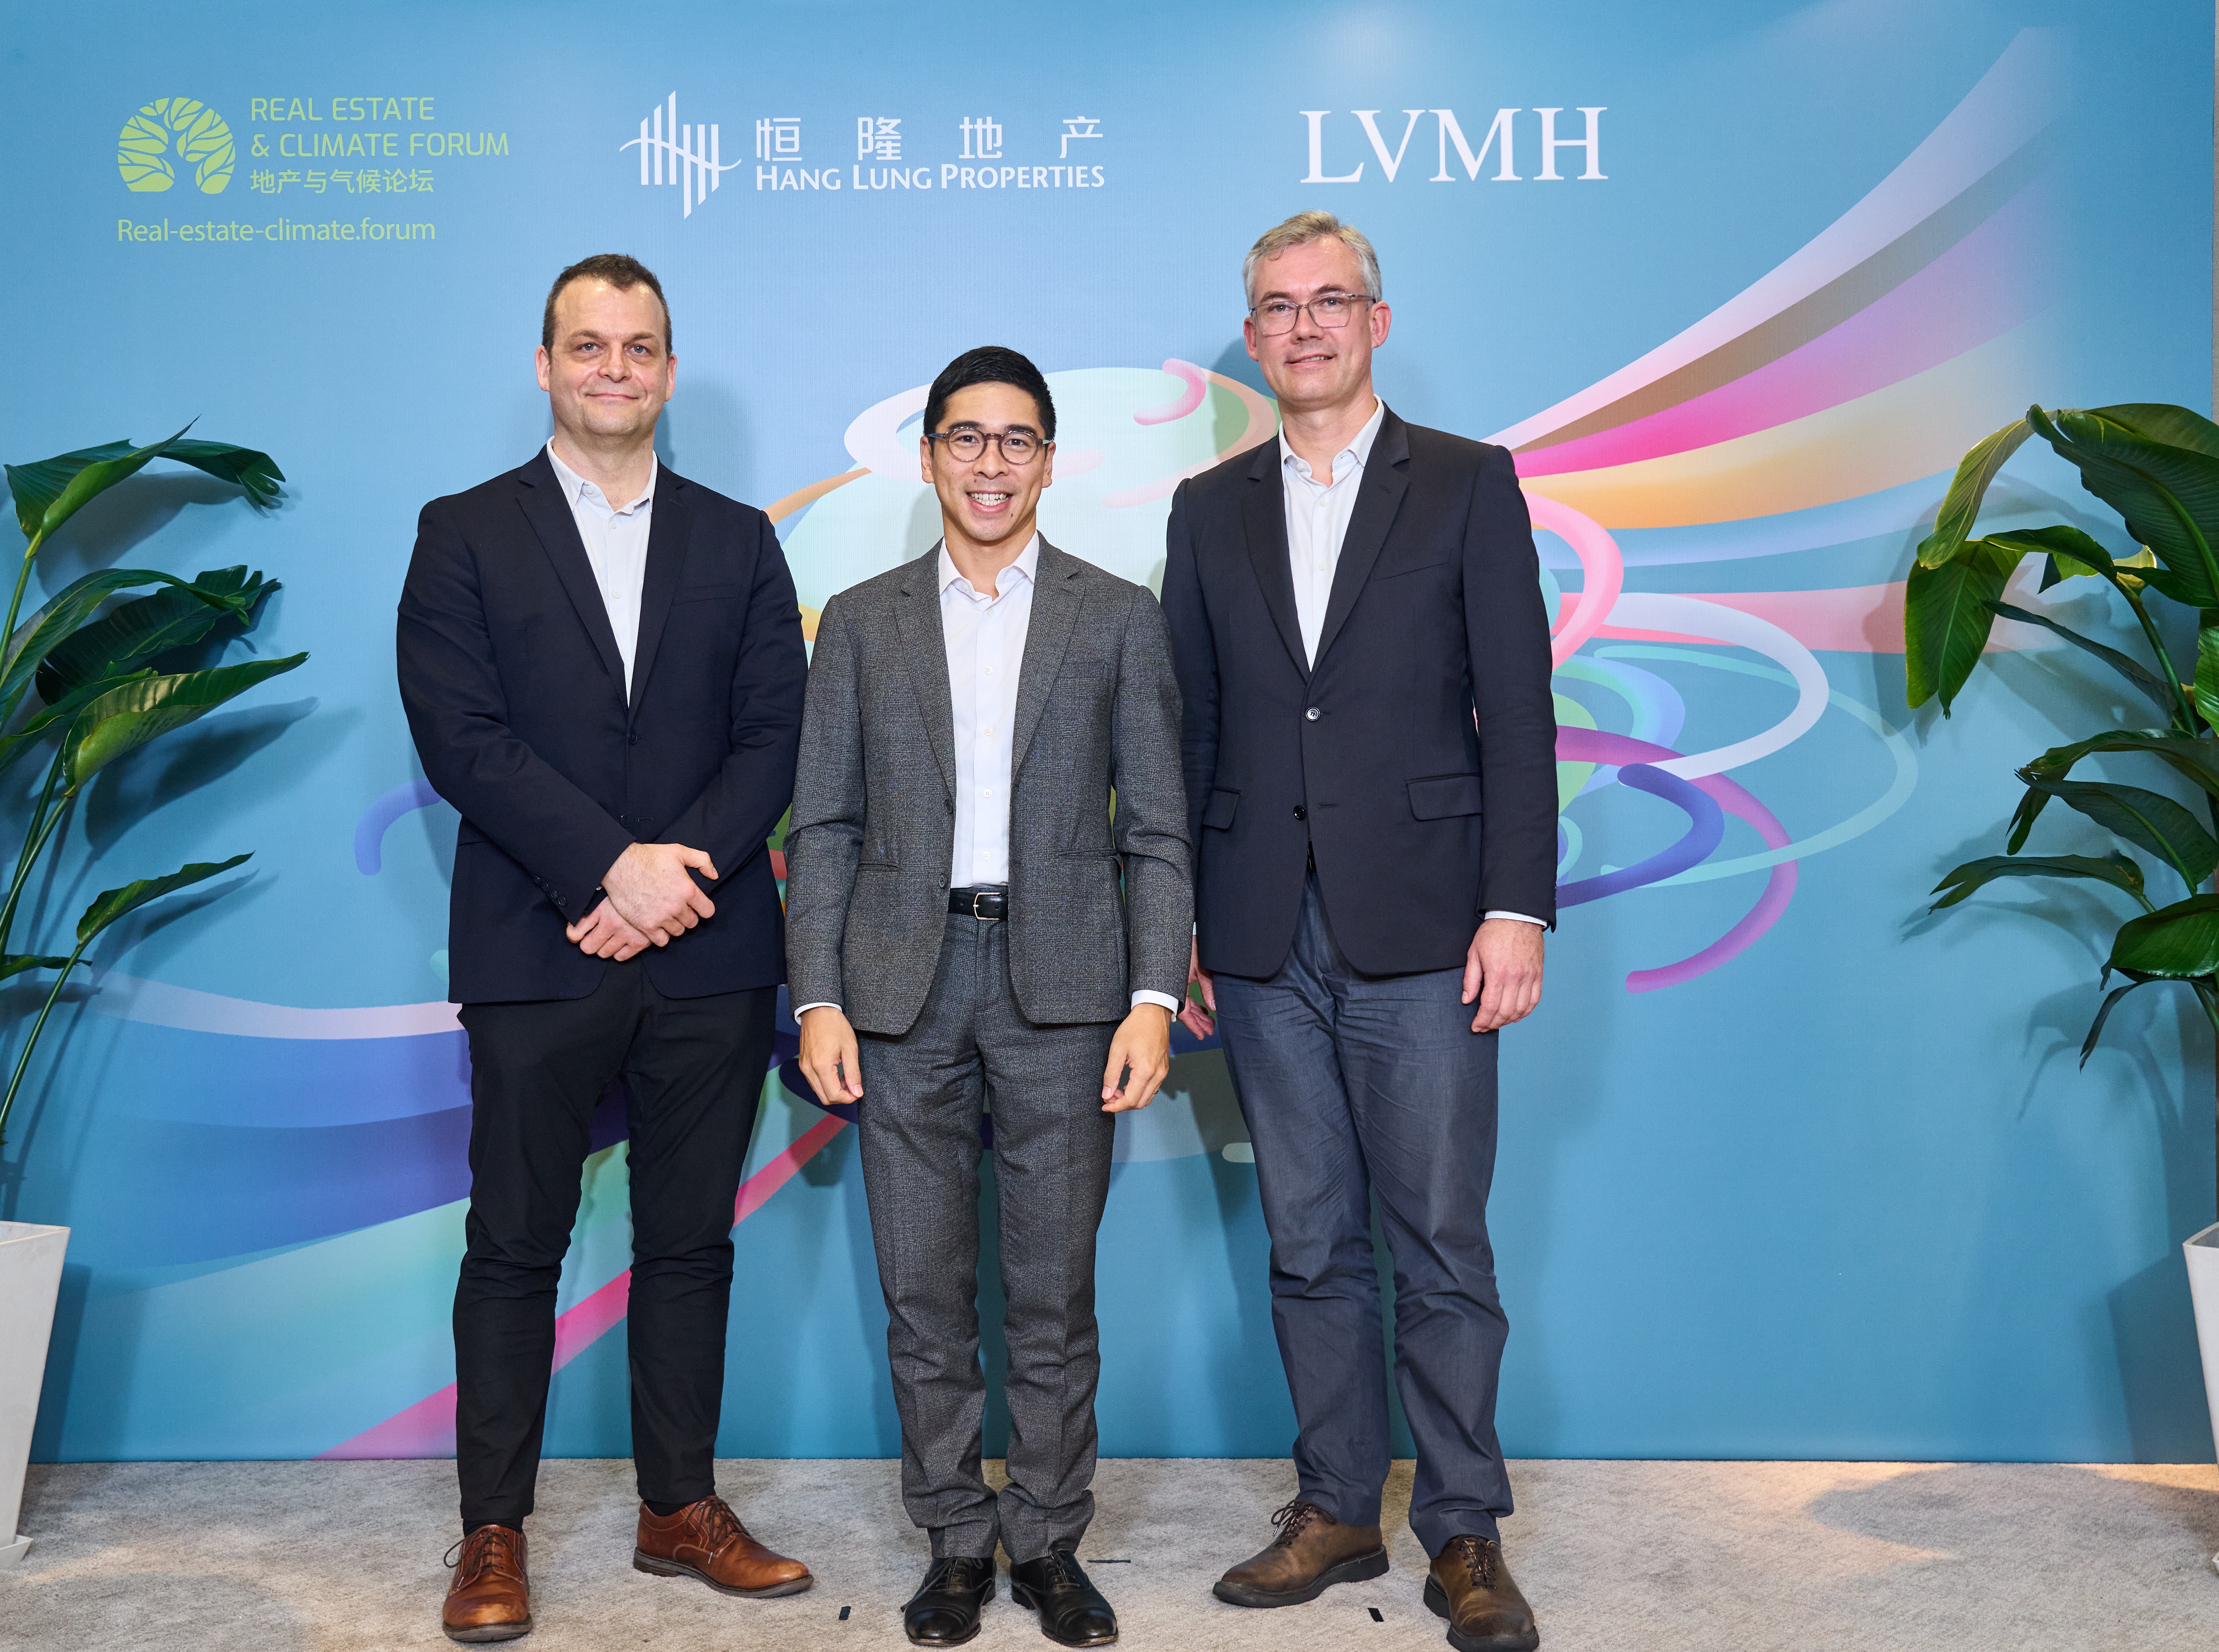 LVMH集團大中華區總裁吳越先生于上海舉辦的地產與氣候論壇上歡迎革新領袖及其他參加者出席